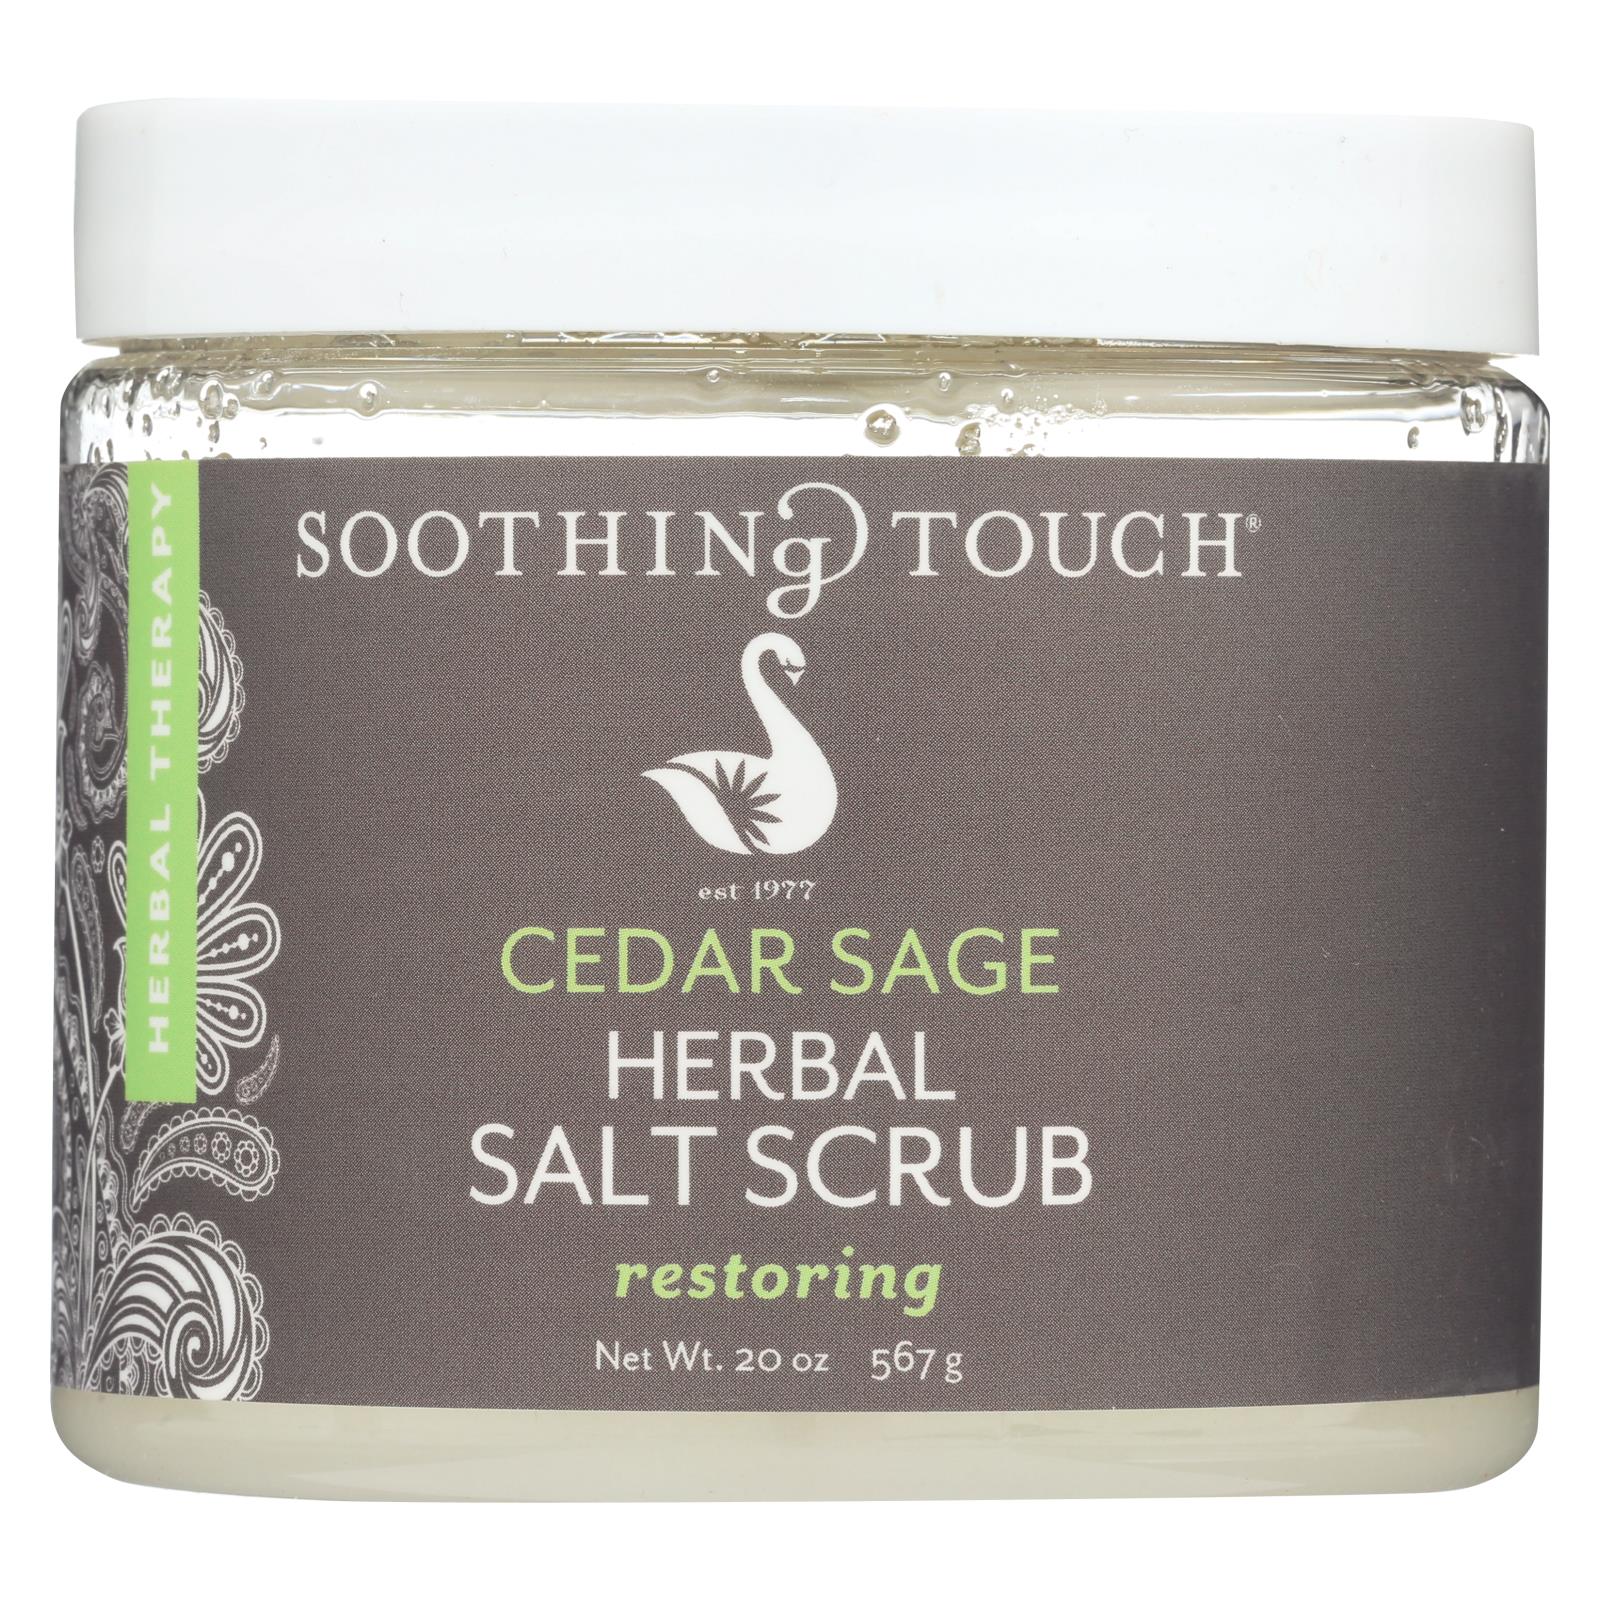 Soothing Touch Herbal Salt Scrub - Cedar Sage - 20 Oz